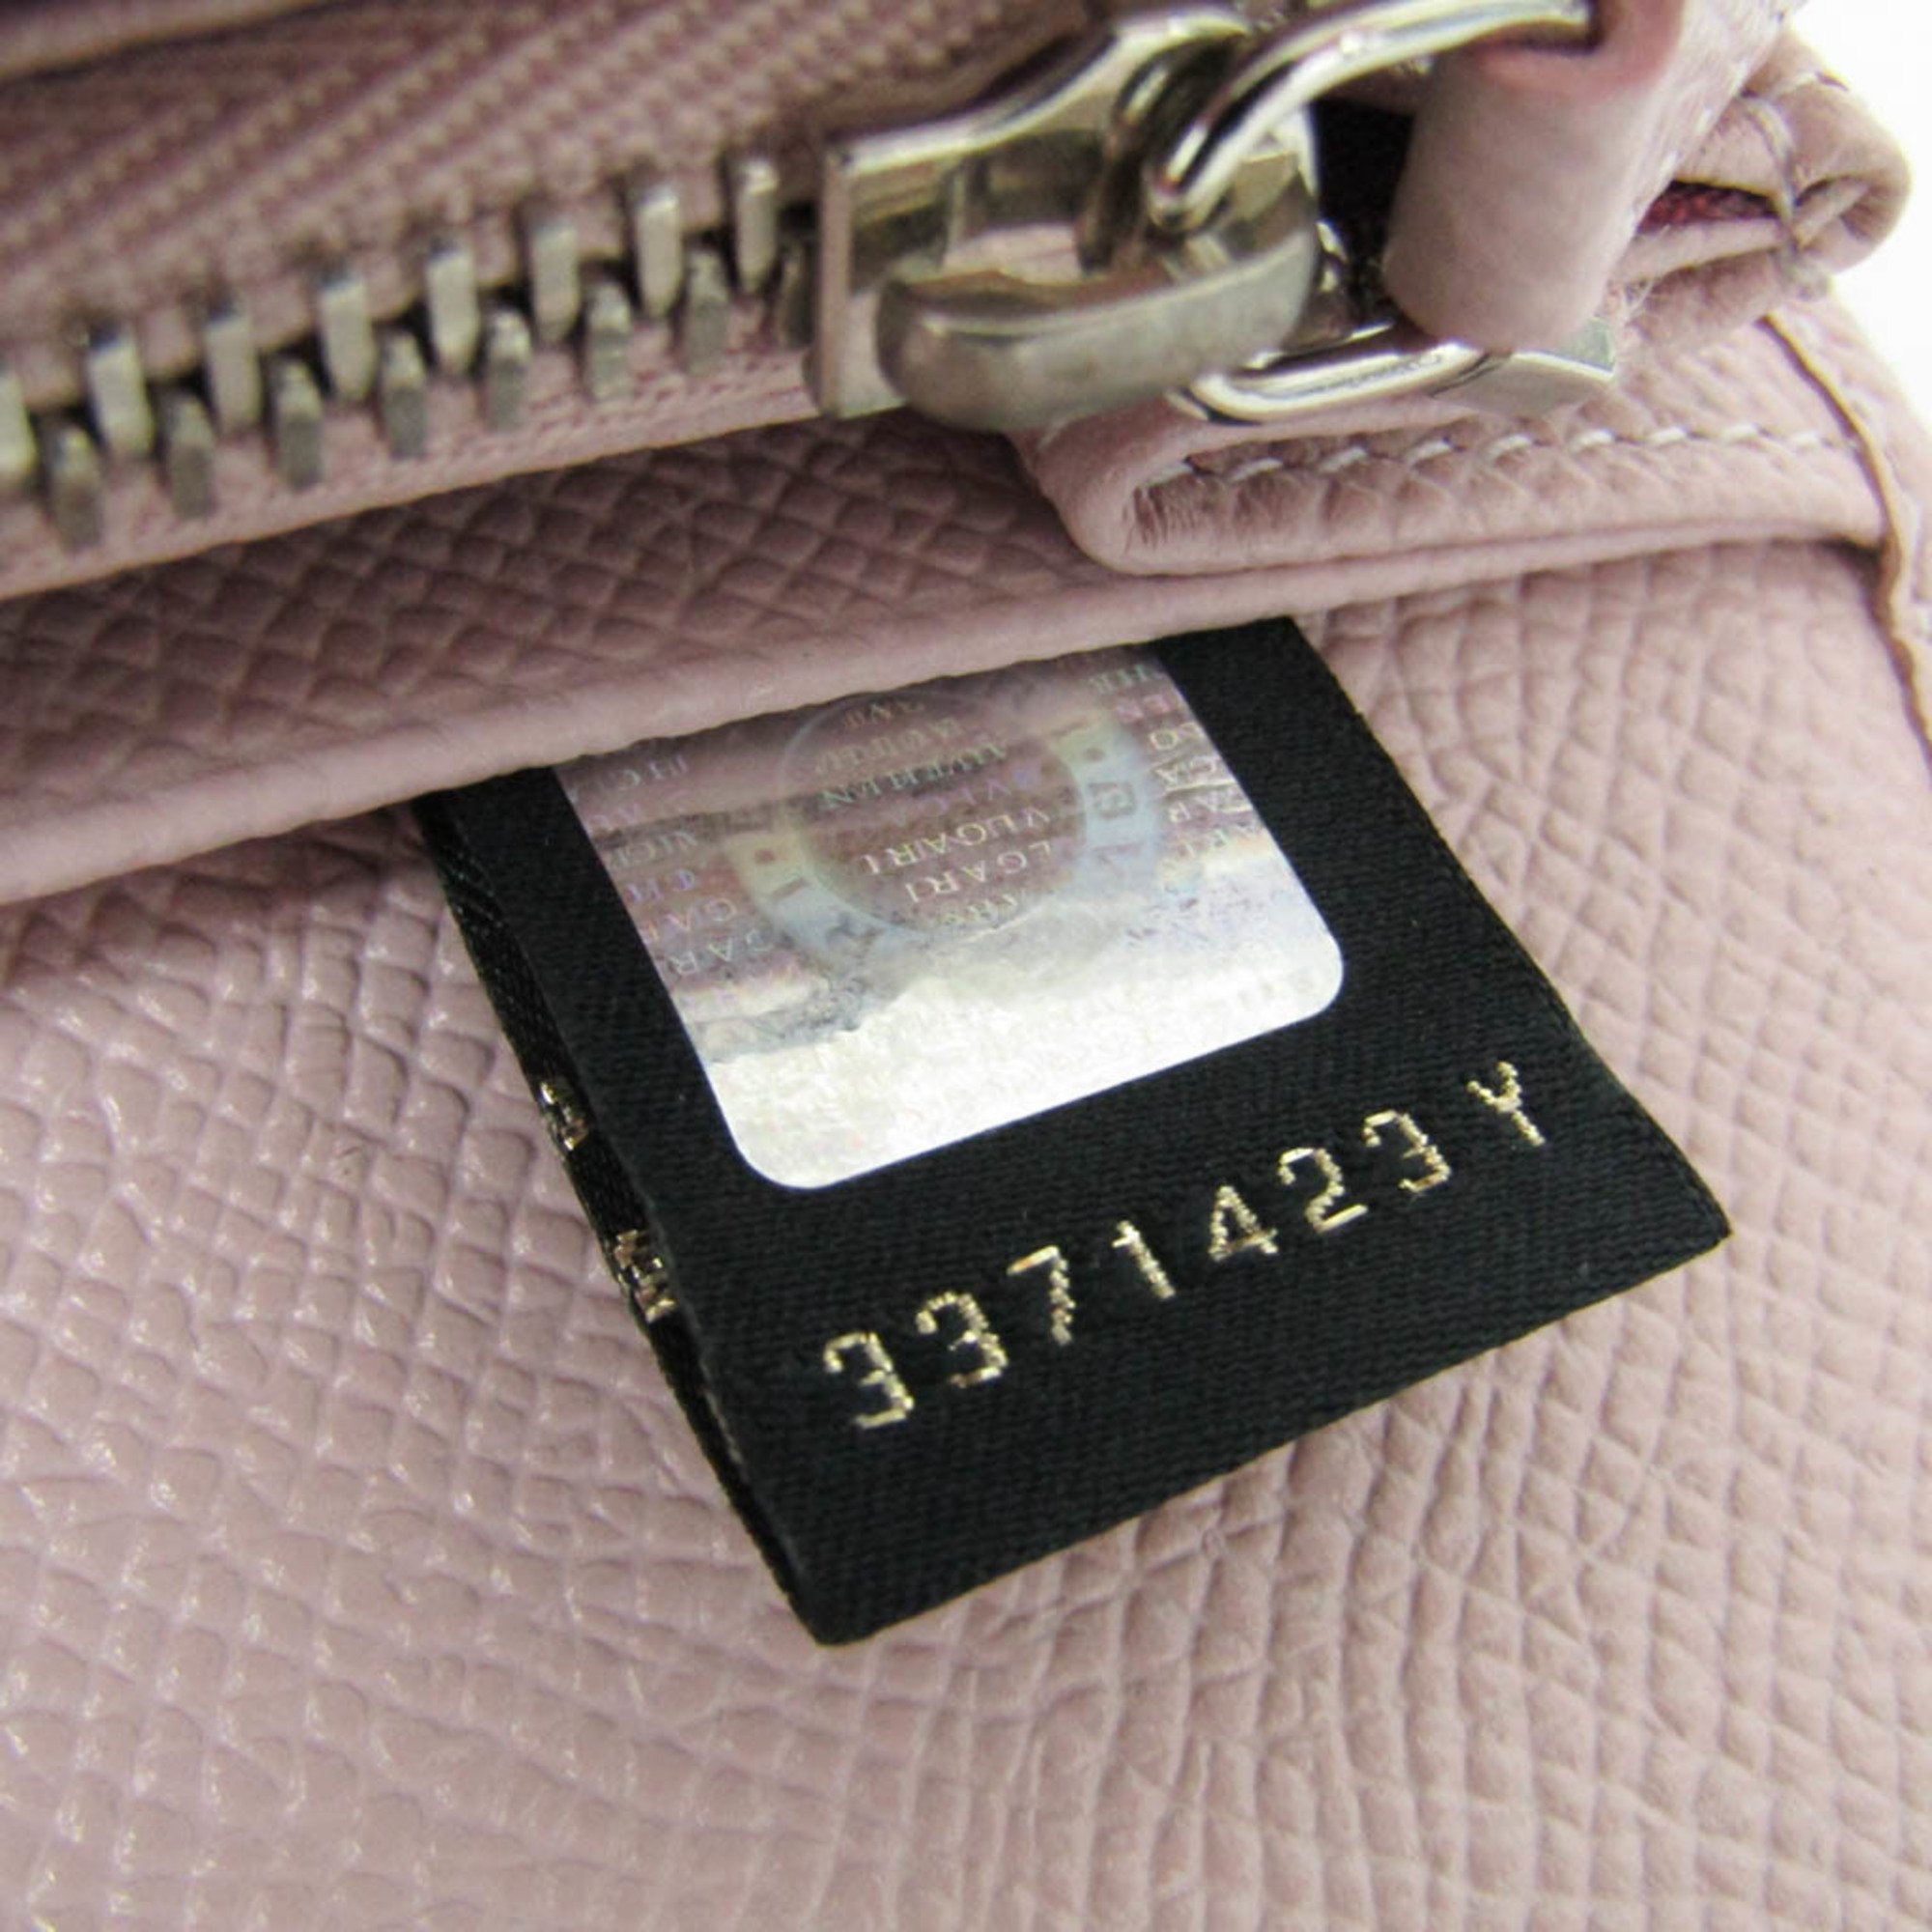 Bvlgari Bvlgari Bvlgari 30415 Women's Leather Long Wallet (bi-fold) Pink